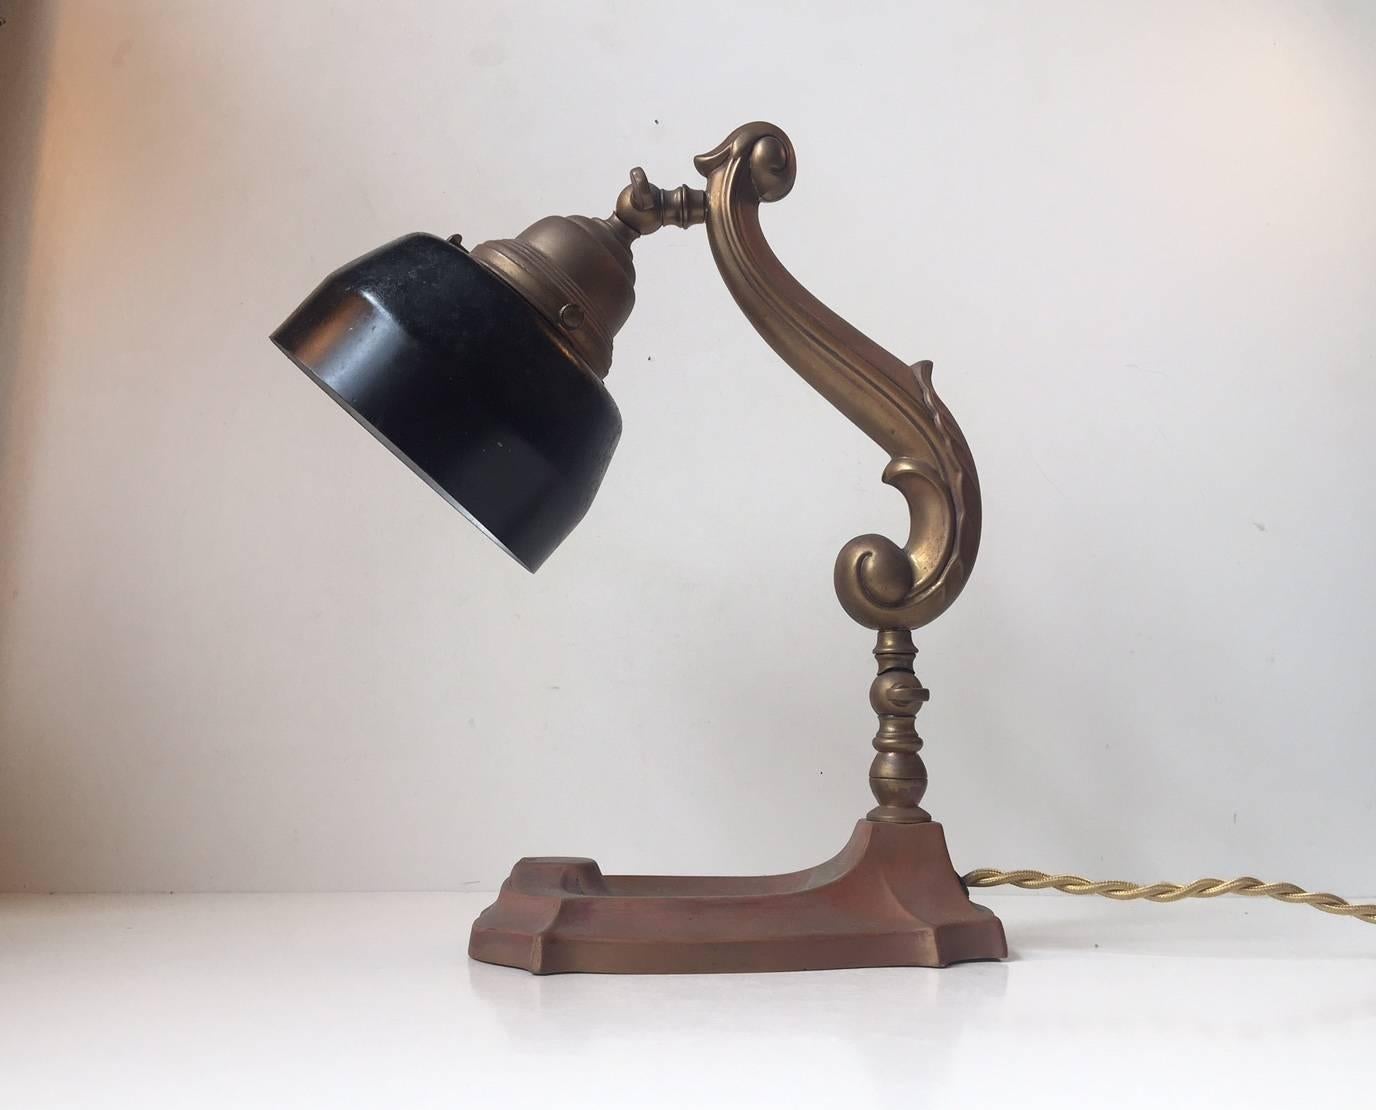 Lampe de bureau danoise des années 1920, ornée et magnifiquement fabriquée, avec cadre et base en cuivre et laiton patinés. Elle est montée avec un abat-jour en acier noir qui peut avoir été appliqué ultérieurement. Il possède son raccord en